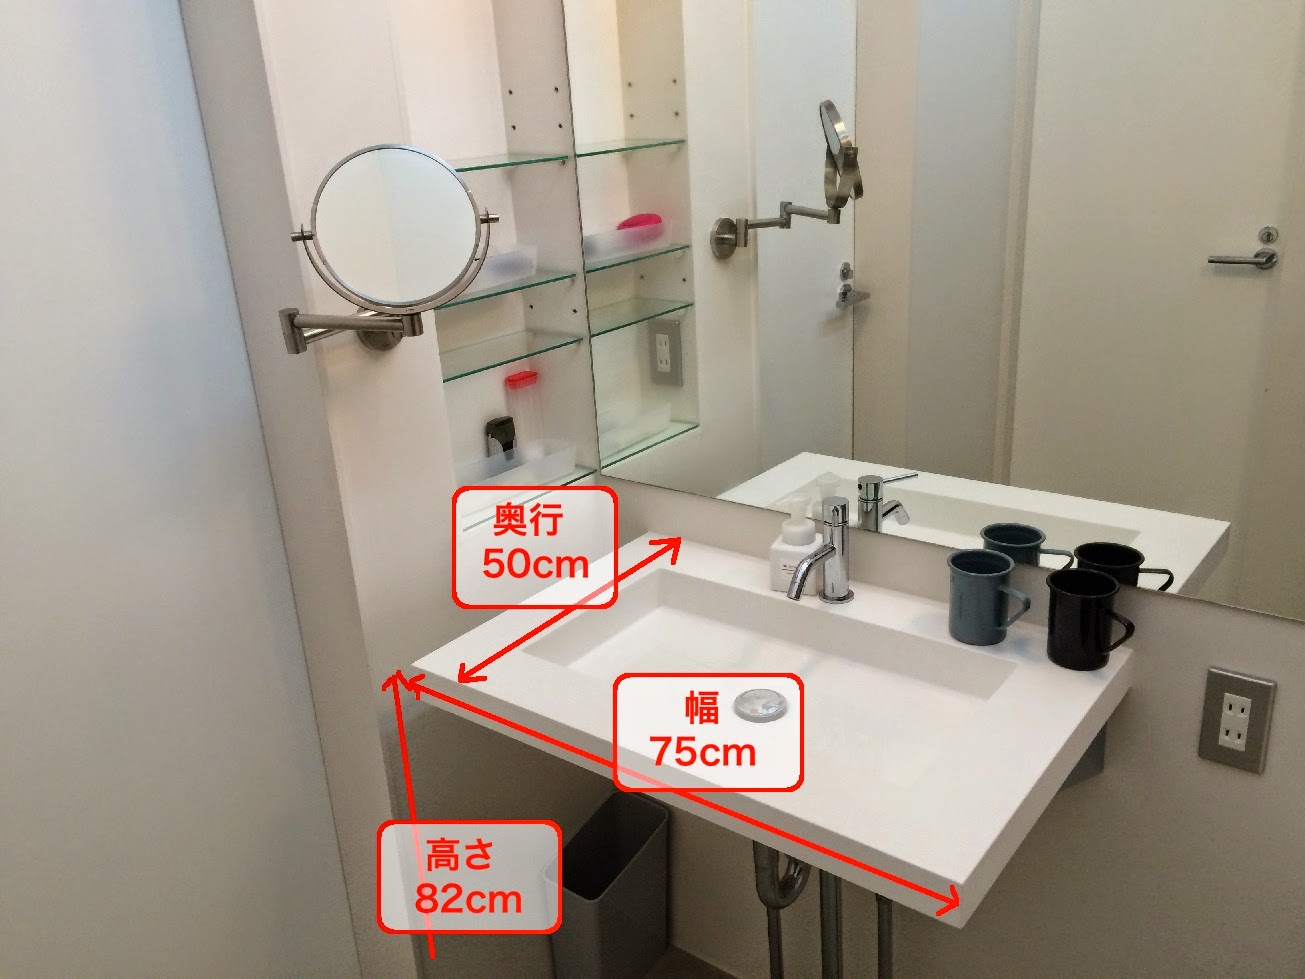 クリスタル ミラー 洗面鏡 浴室鏡 350x500mm 長方形 クリスタルカット 洗面 鏡 浴室 壁掛け ミラー 日本製 5mm厚 取付金具と説明書 壁掛け鏡 ウオールミラー - 2